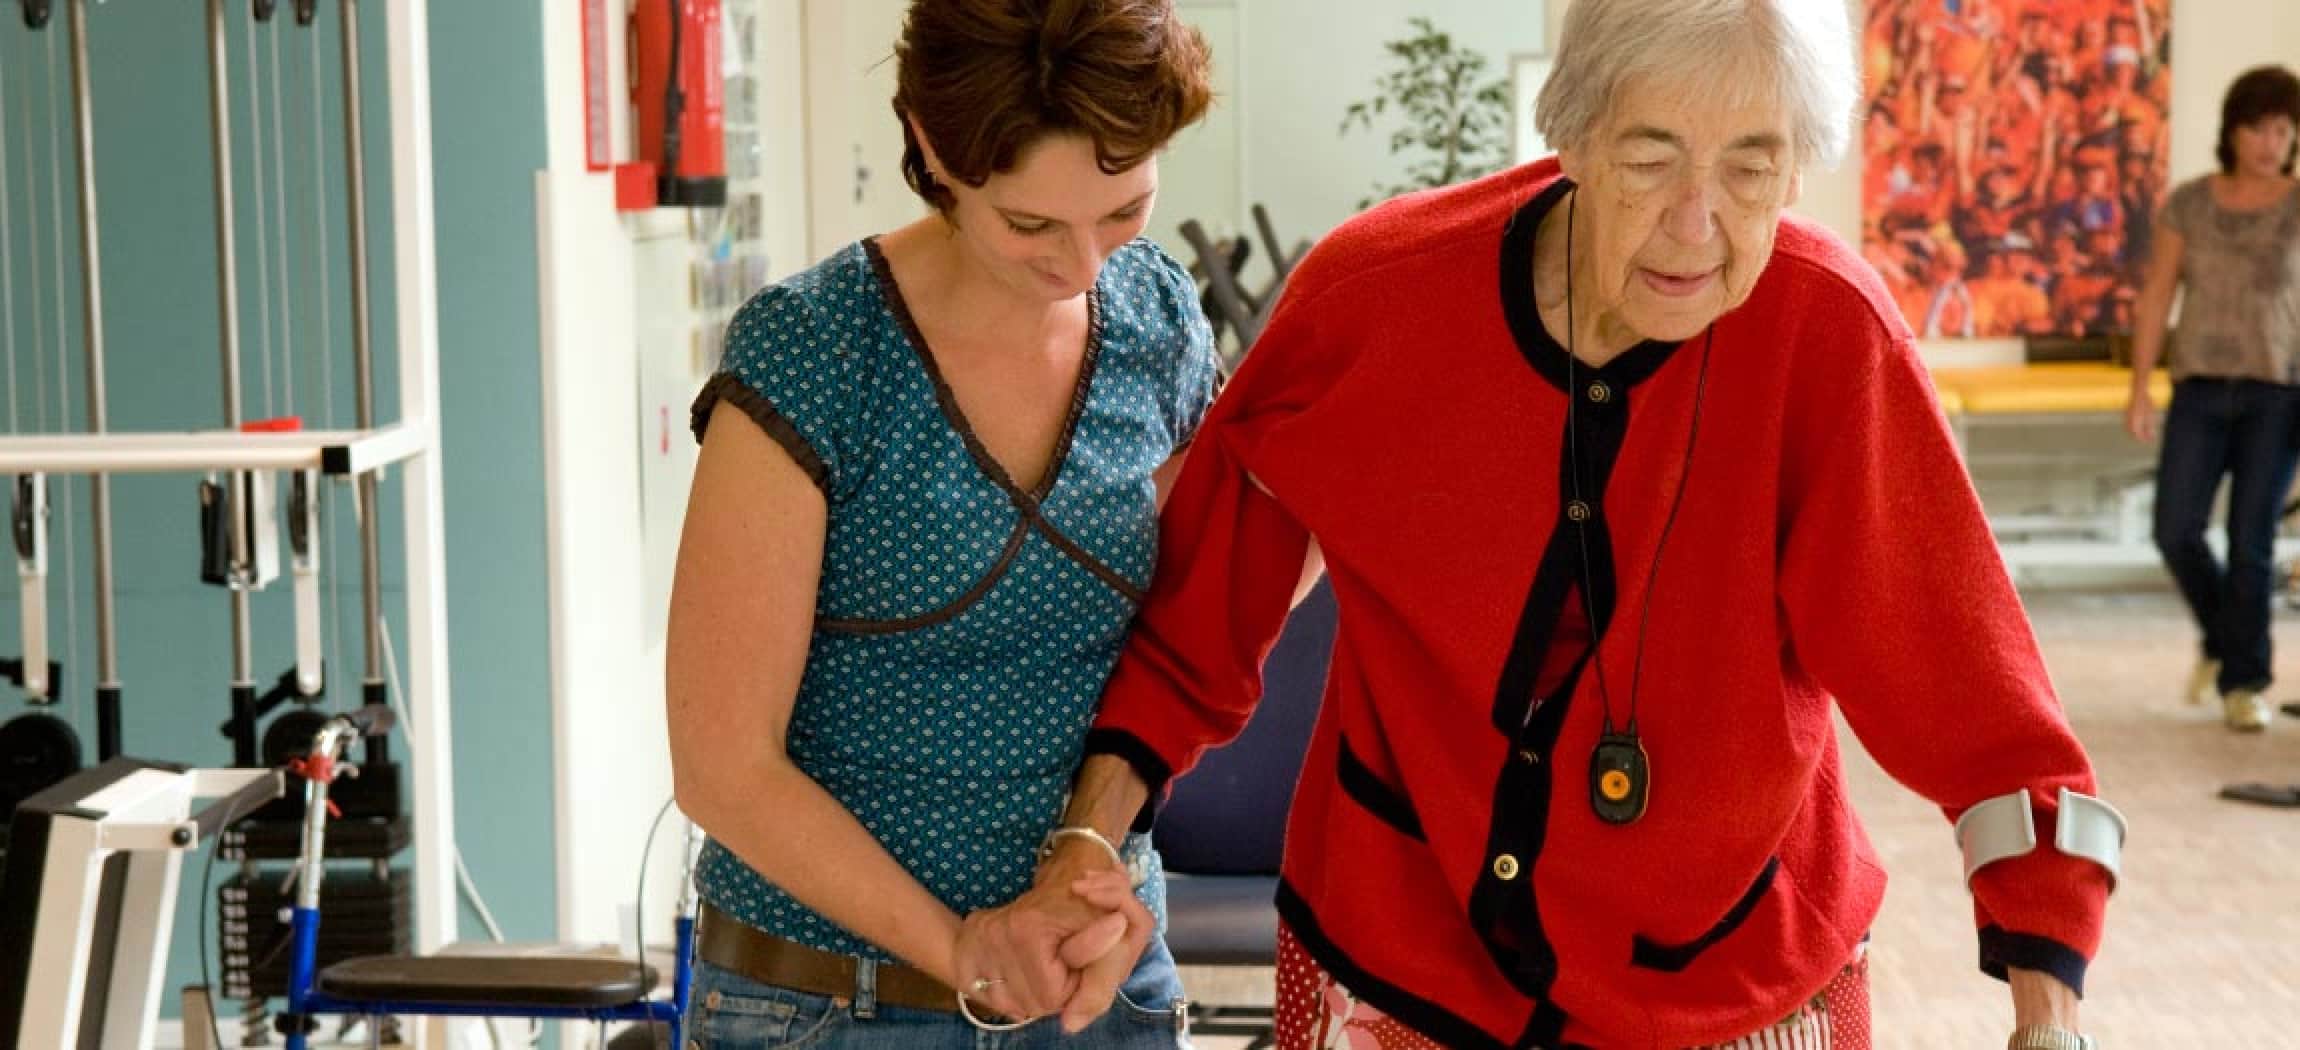 Ergotherapeut helpt oudere vrouw om te lopen met krukken